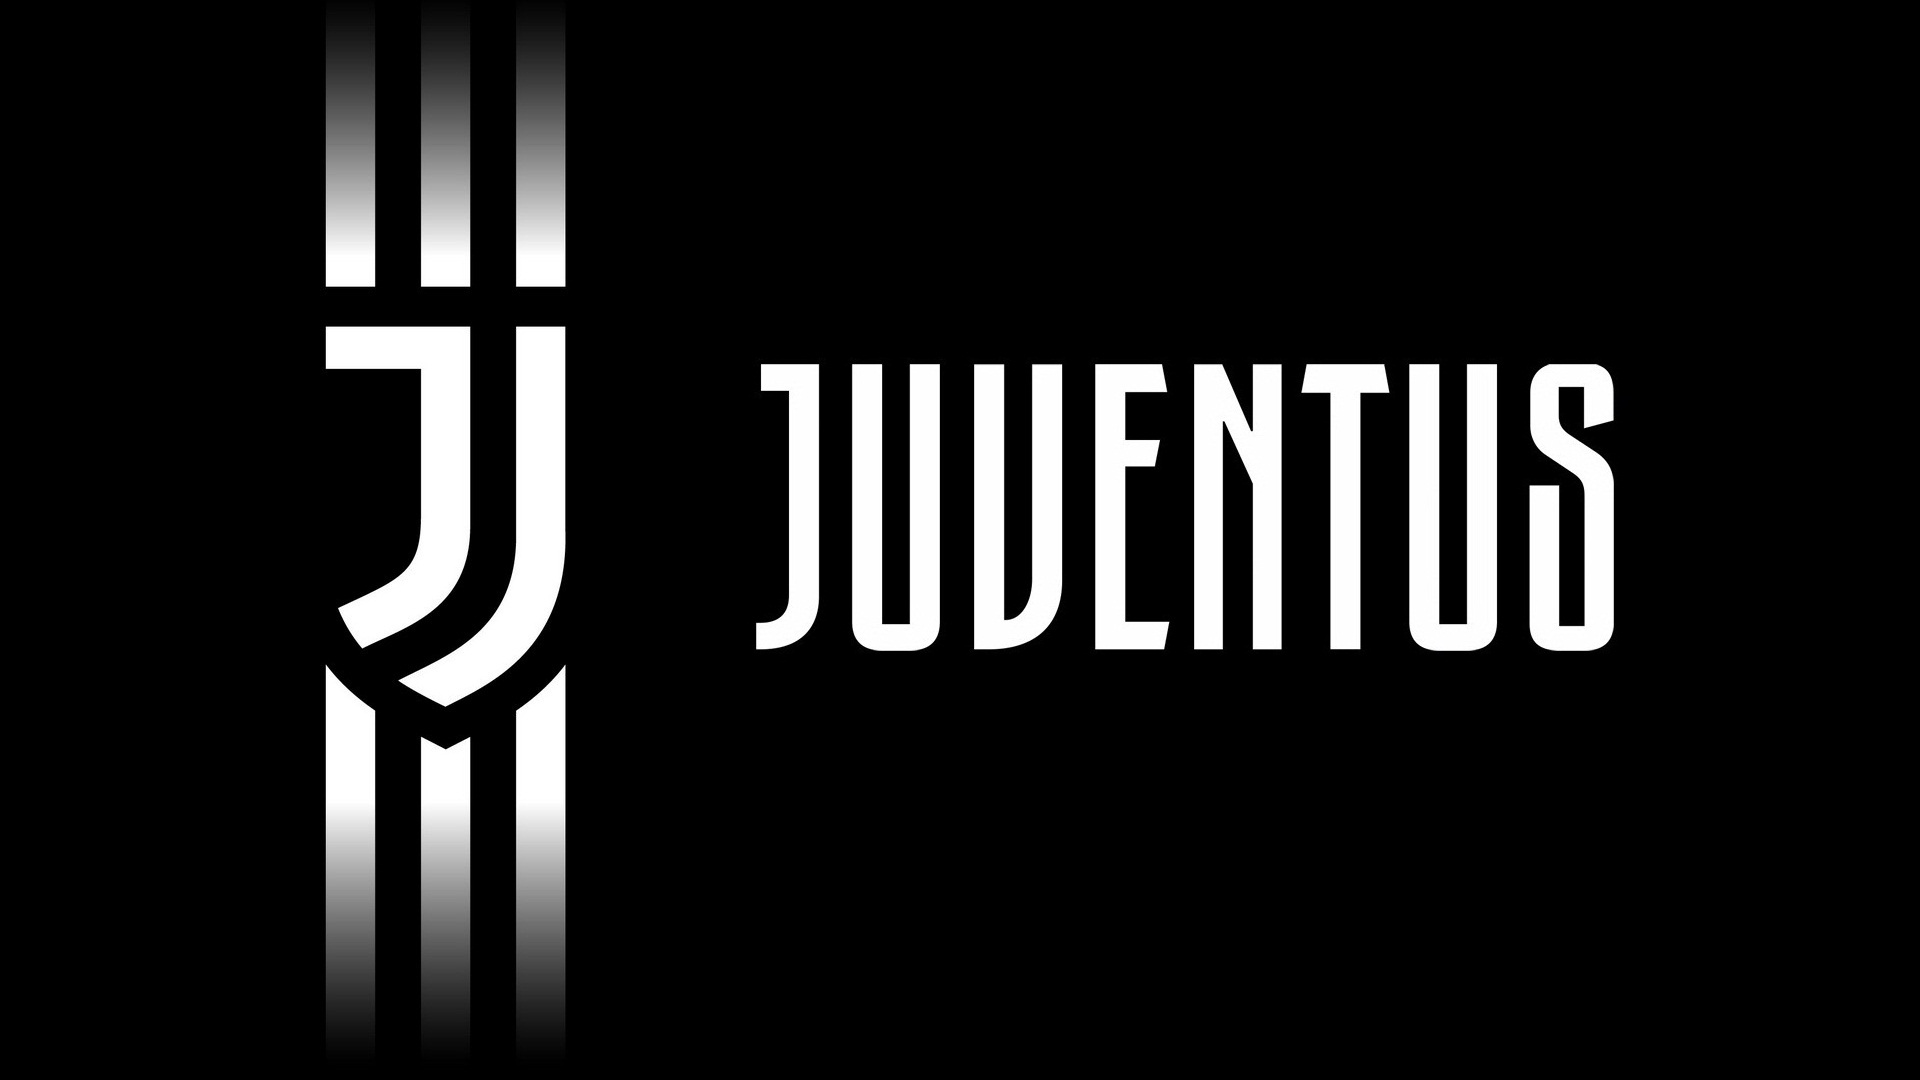 História da Juventus